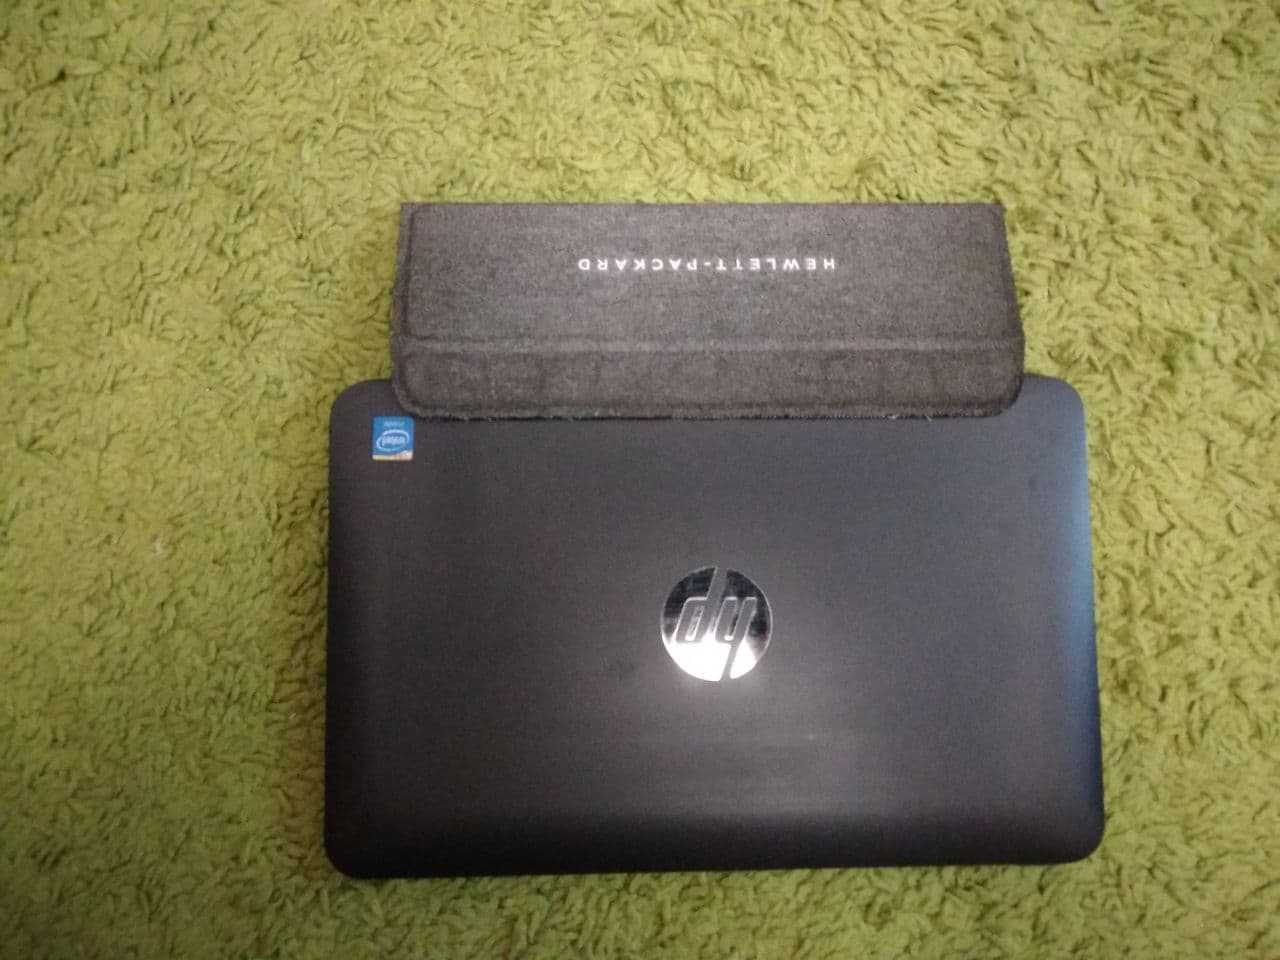 Продам 2-в-1 ноутбук-планшет HP Pavilion x2 10